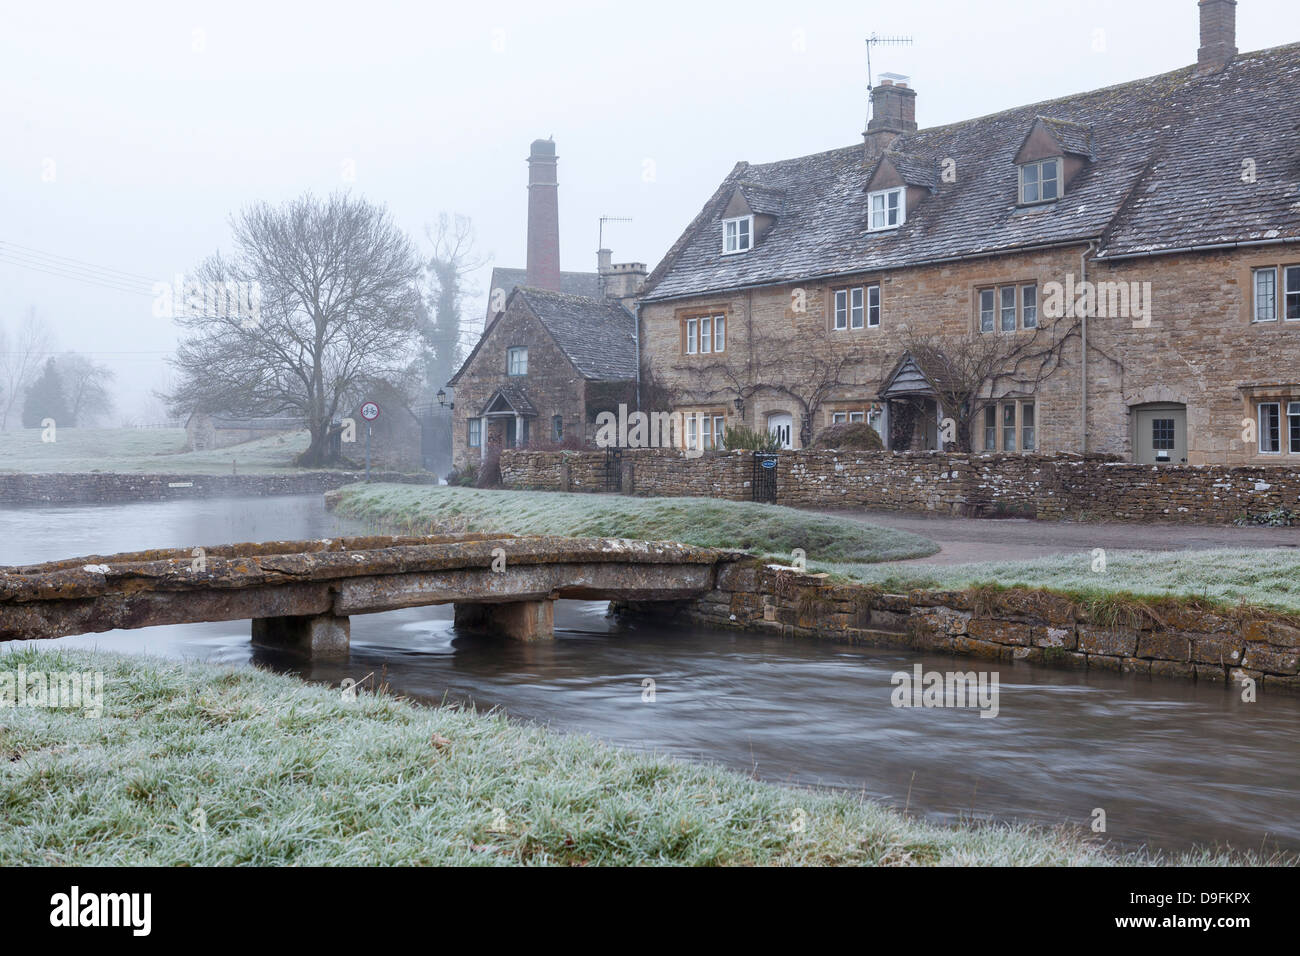 Senken Sie ein Morgen Nebel und frostigen Winter Schlachtung, Cotswolds, Gloucestershire, England, UK Stockfoto